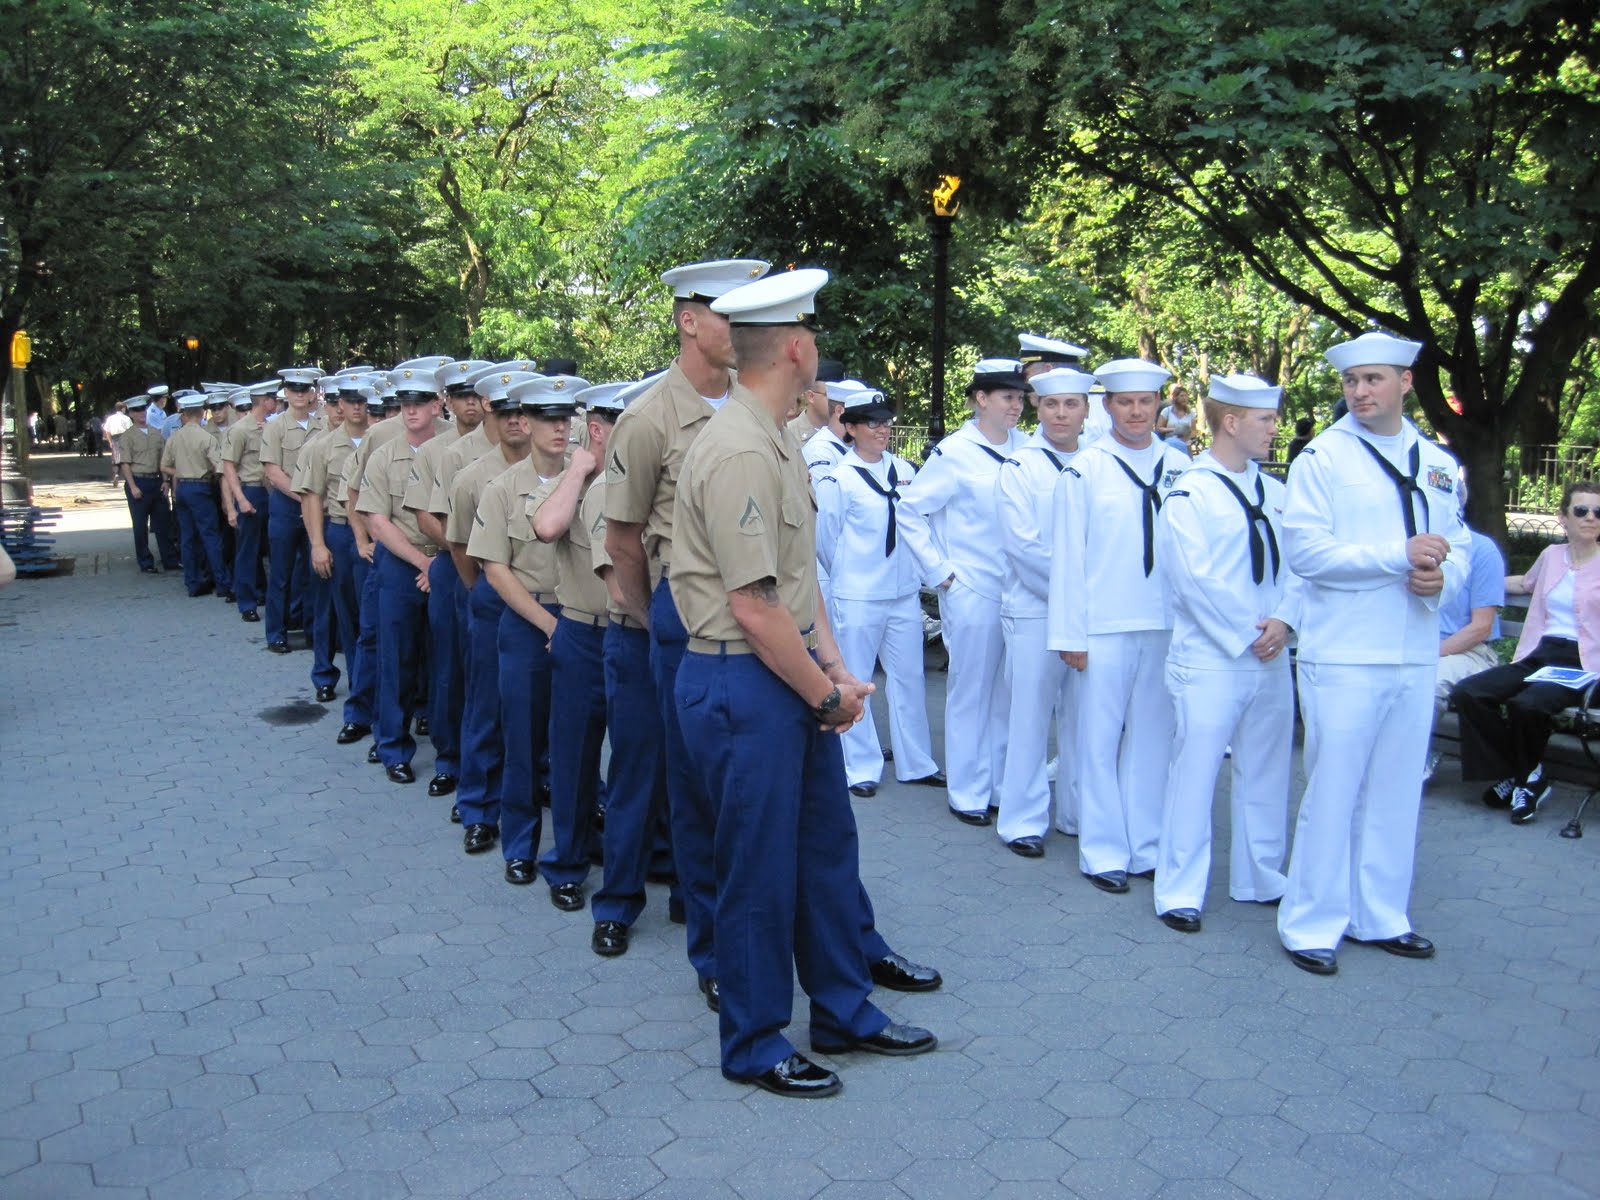 sailors images